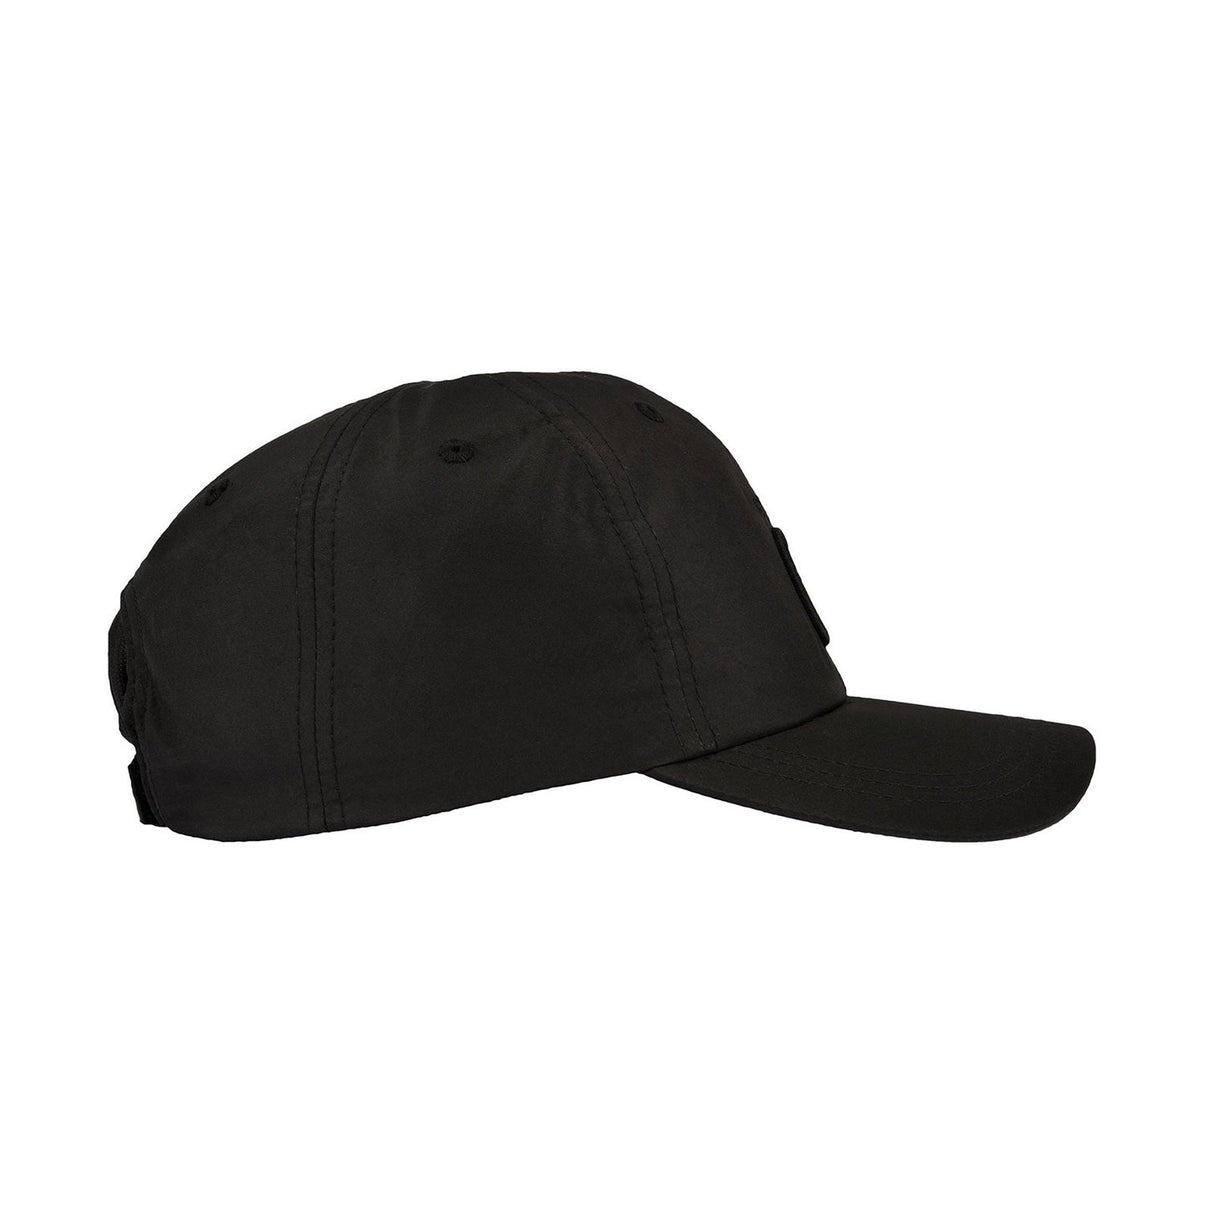 CODE-ZERO CAP TRIM 2 BLACK